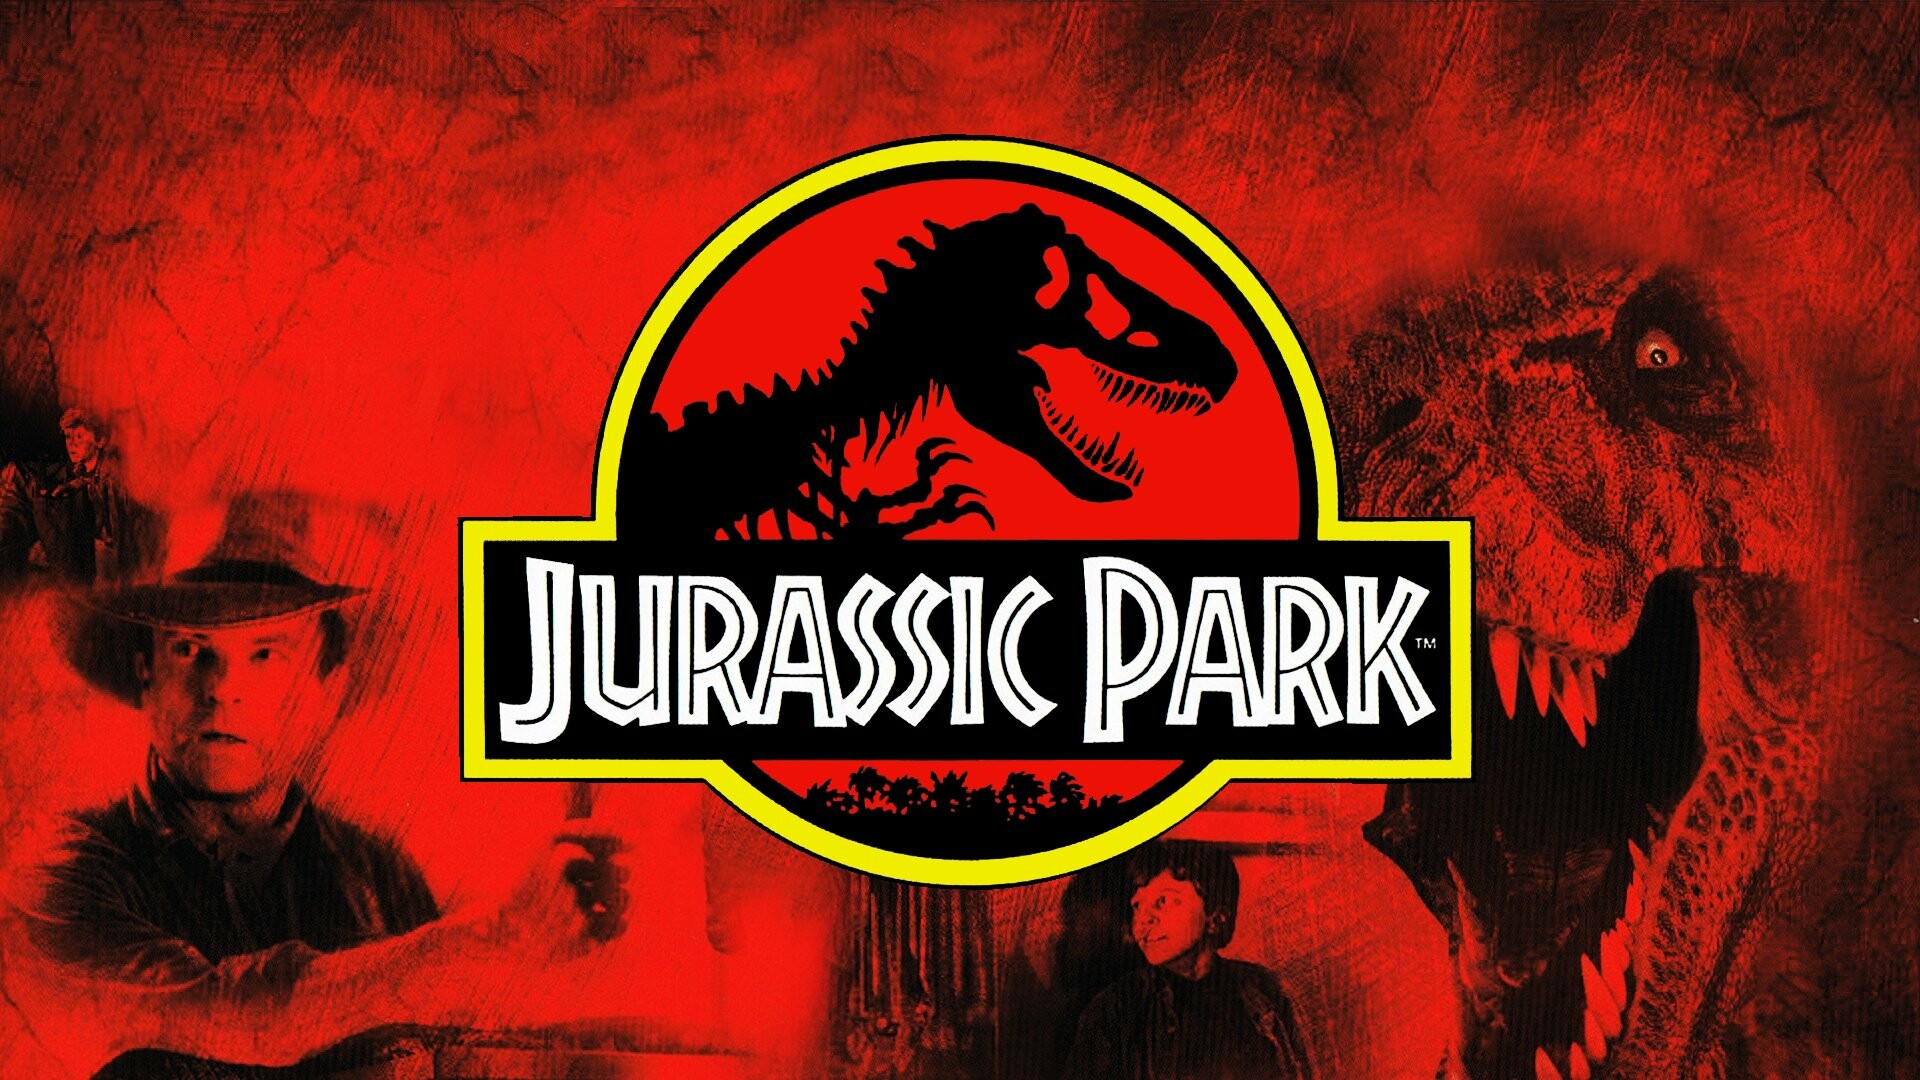 Jurassic Park: Adventure, Sci Fi, Fantasy, Dinosaur, Movie, Film, Sam Neill as Dr. Alan Grant. 1920x1080 Full HD Wallpaper.